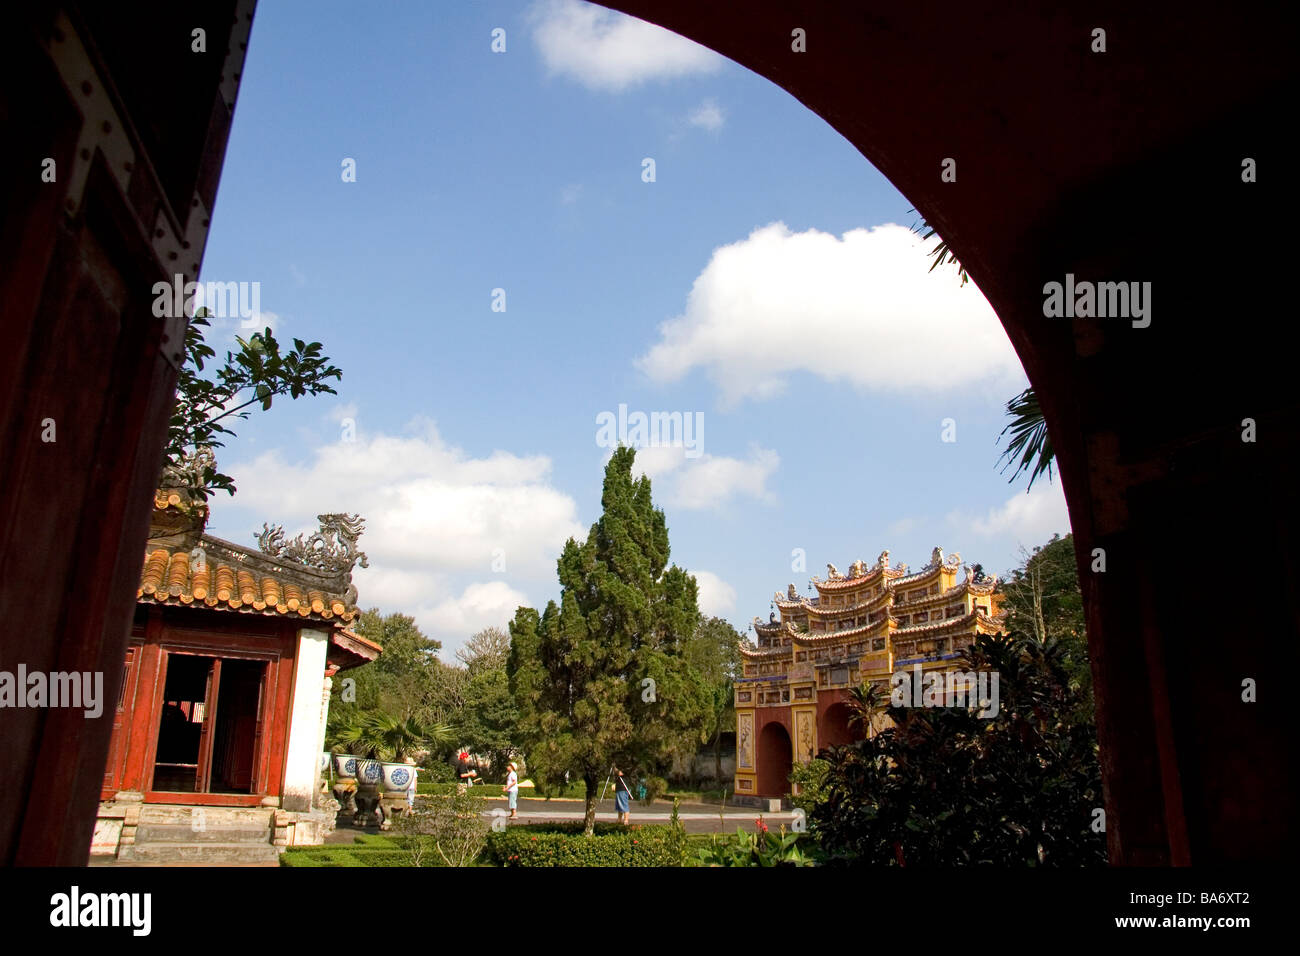 Puertas arqueadas en la Ciudadela Imperial de Hué, Vietnam Foto de stock